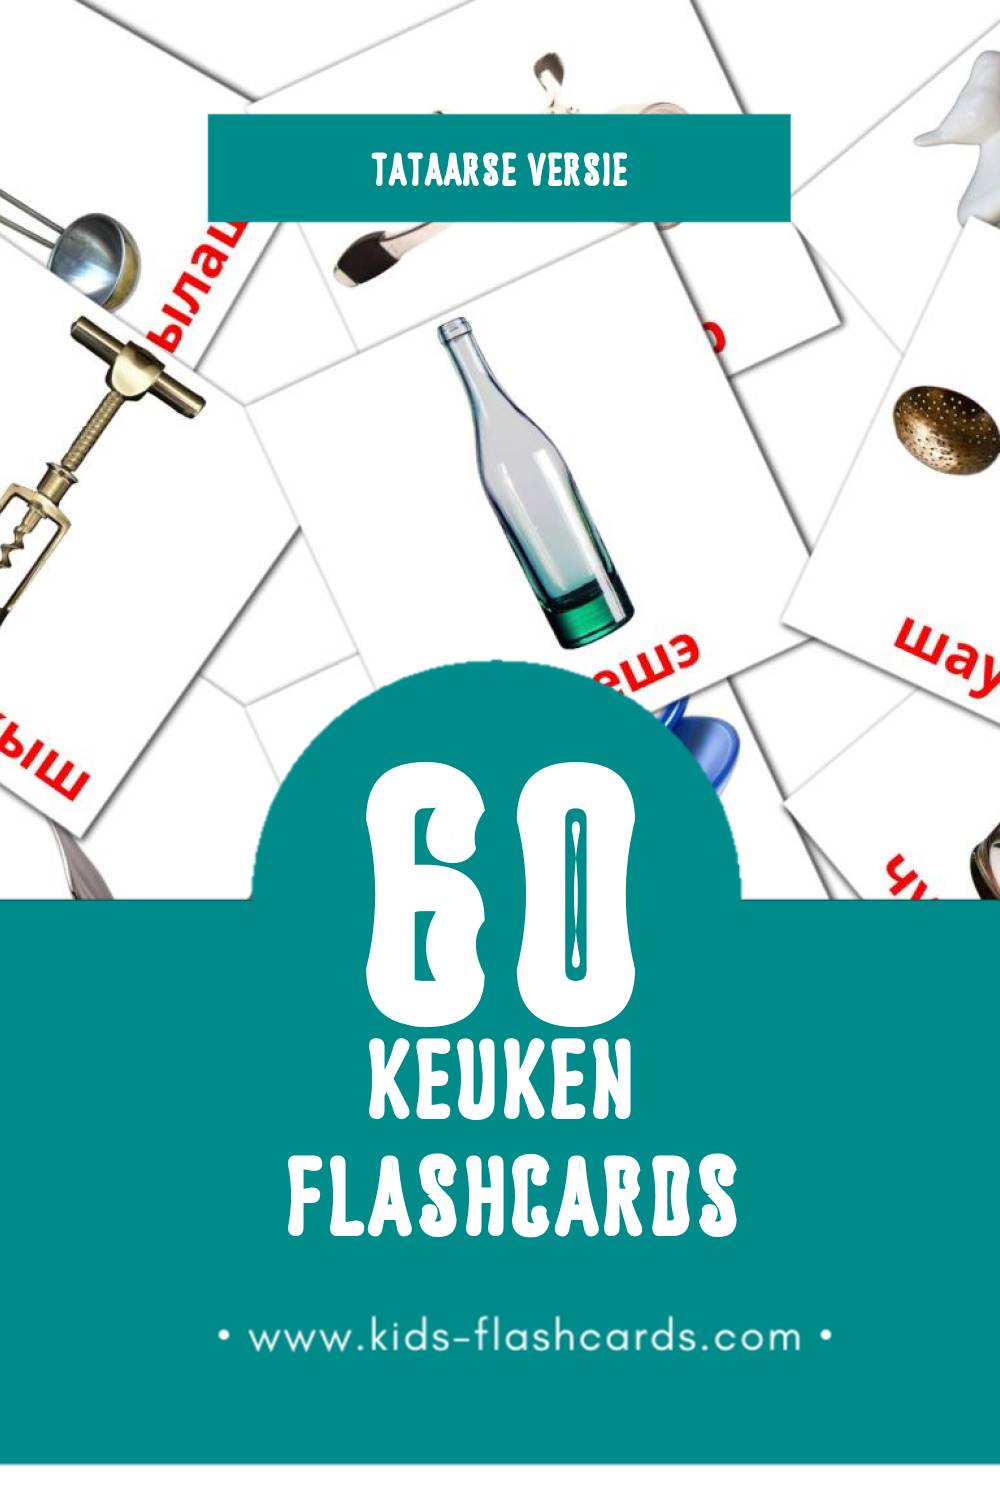 Visuele Ашханә Flashcards voor Kleuters (60 kaarten in het Tataars)